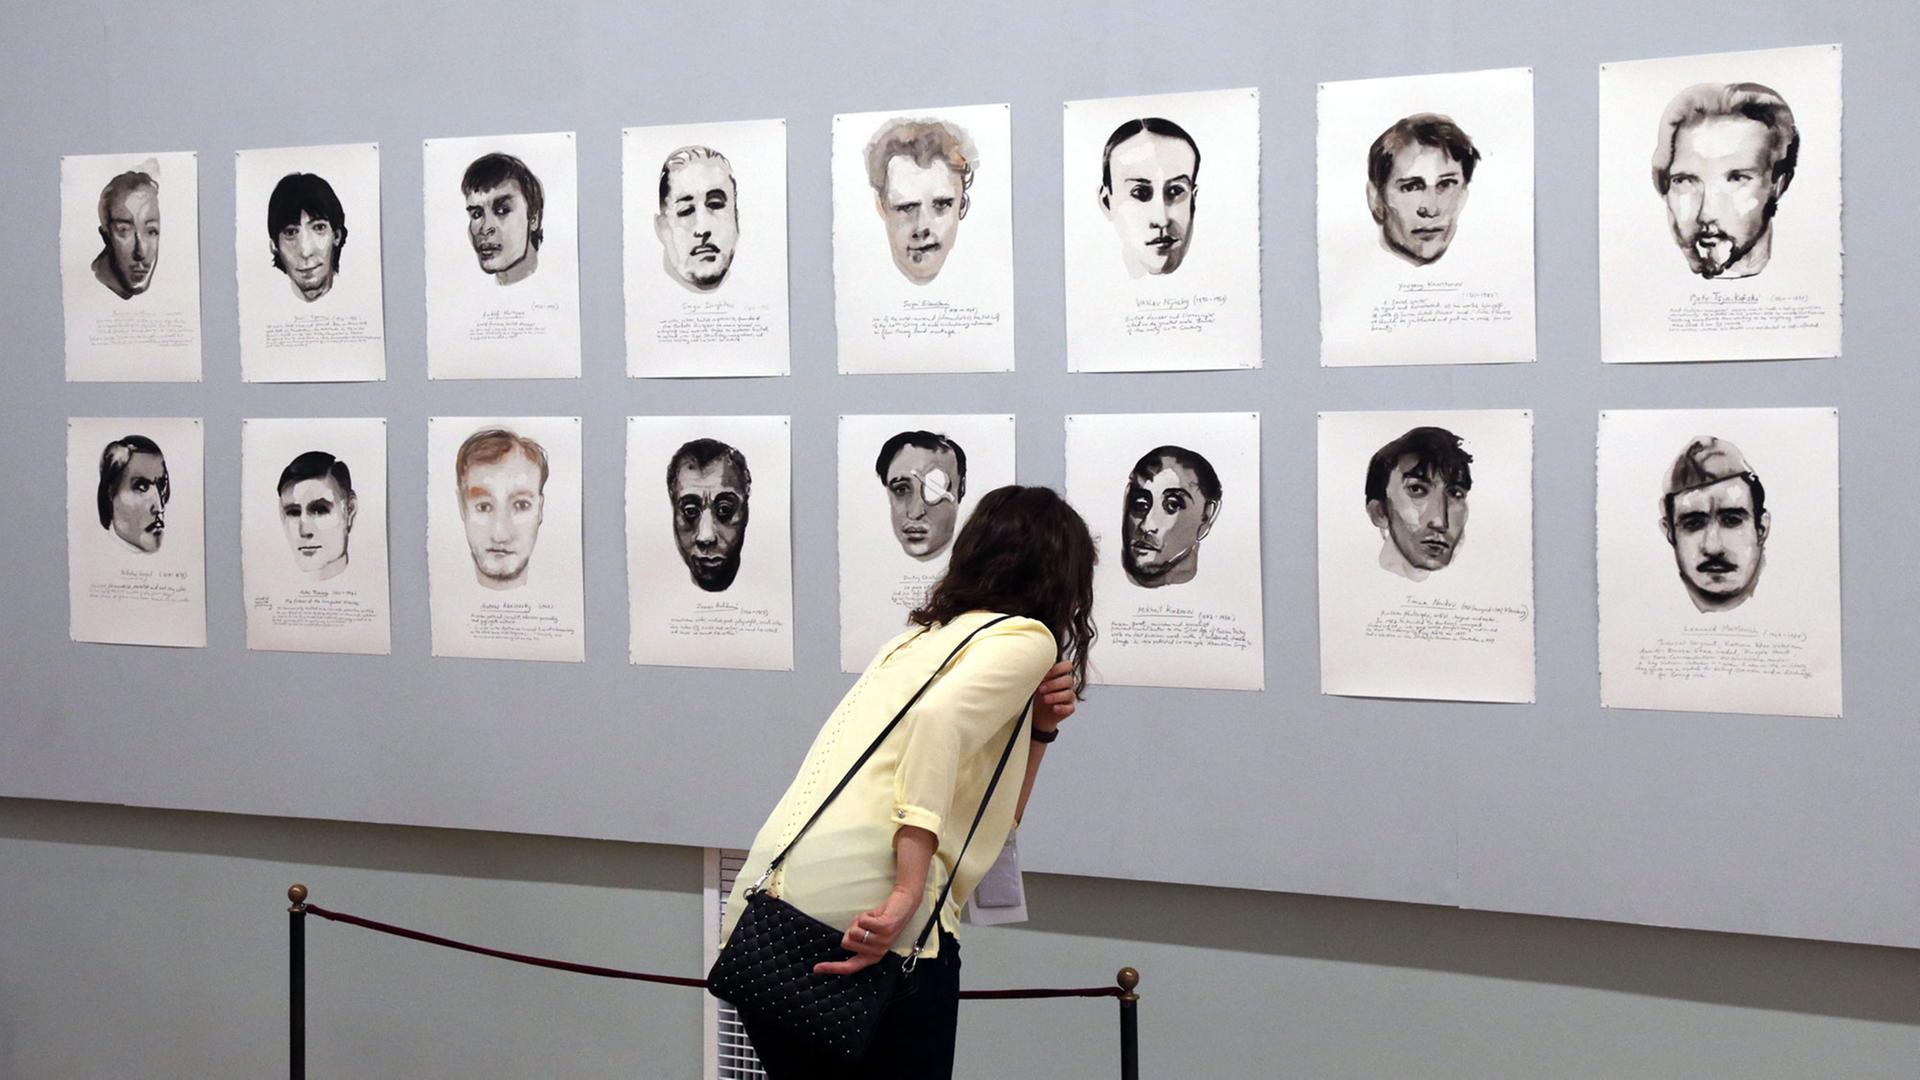 Eine Besucherin betrachtet am 27.6.2014 die Serie "Great Men" der niederländischen Künstlerin Marlene Dumas bei der "Manifesta 10" in St. Petersburg, Russland: Porträts von berühmten homosexuellen Künstlern und Kulturschaffenden.